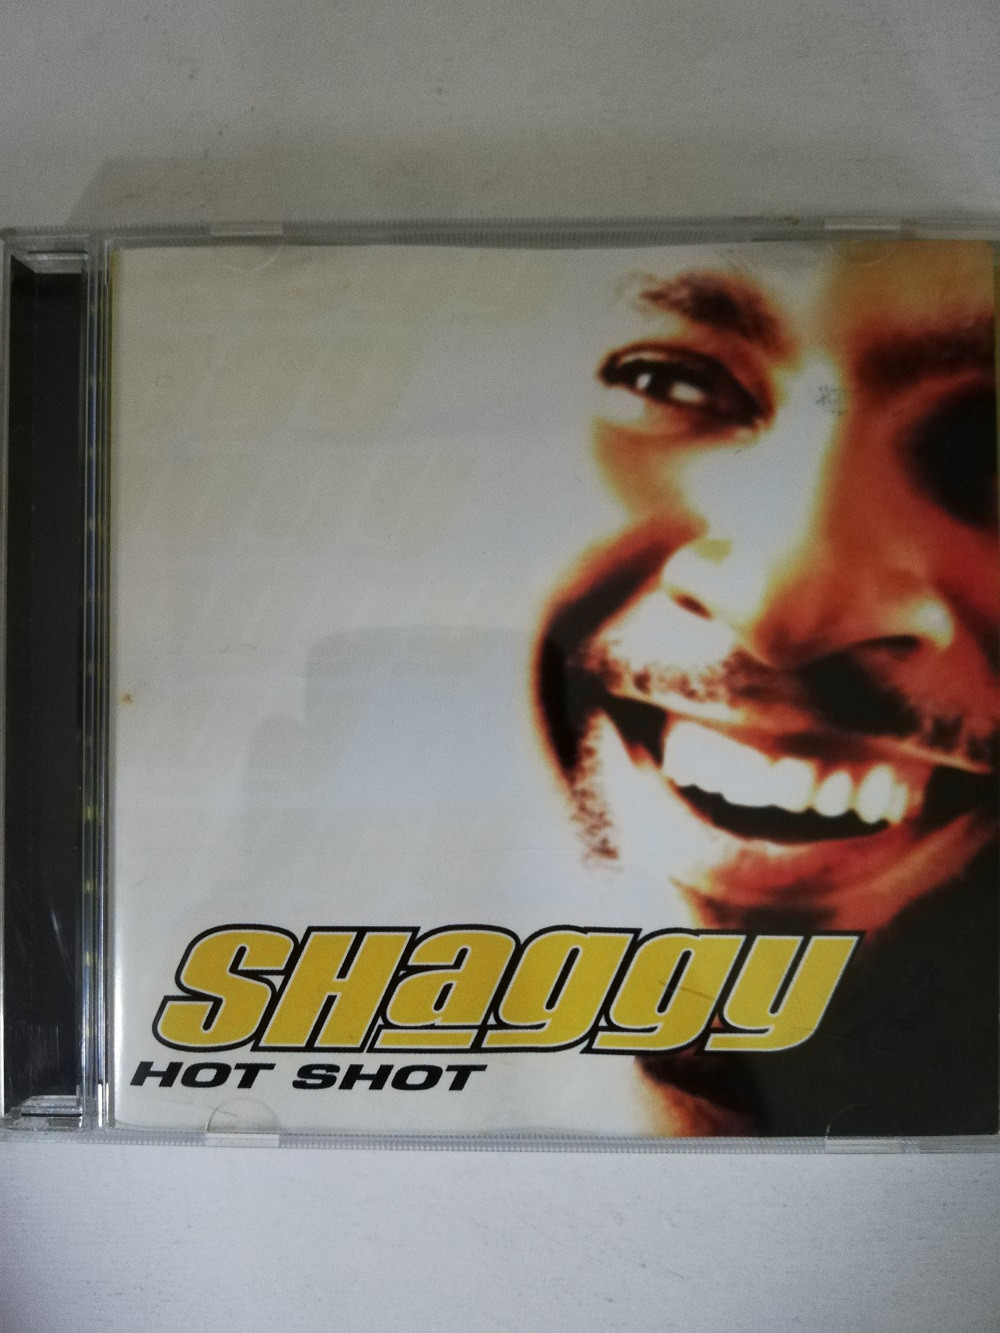 Imagen CD SHAGGY - HOT SHOT